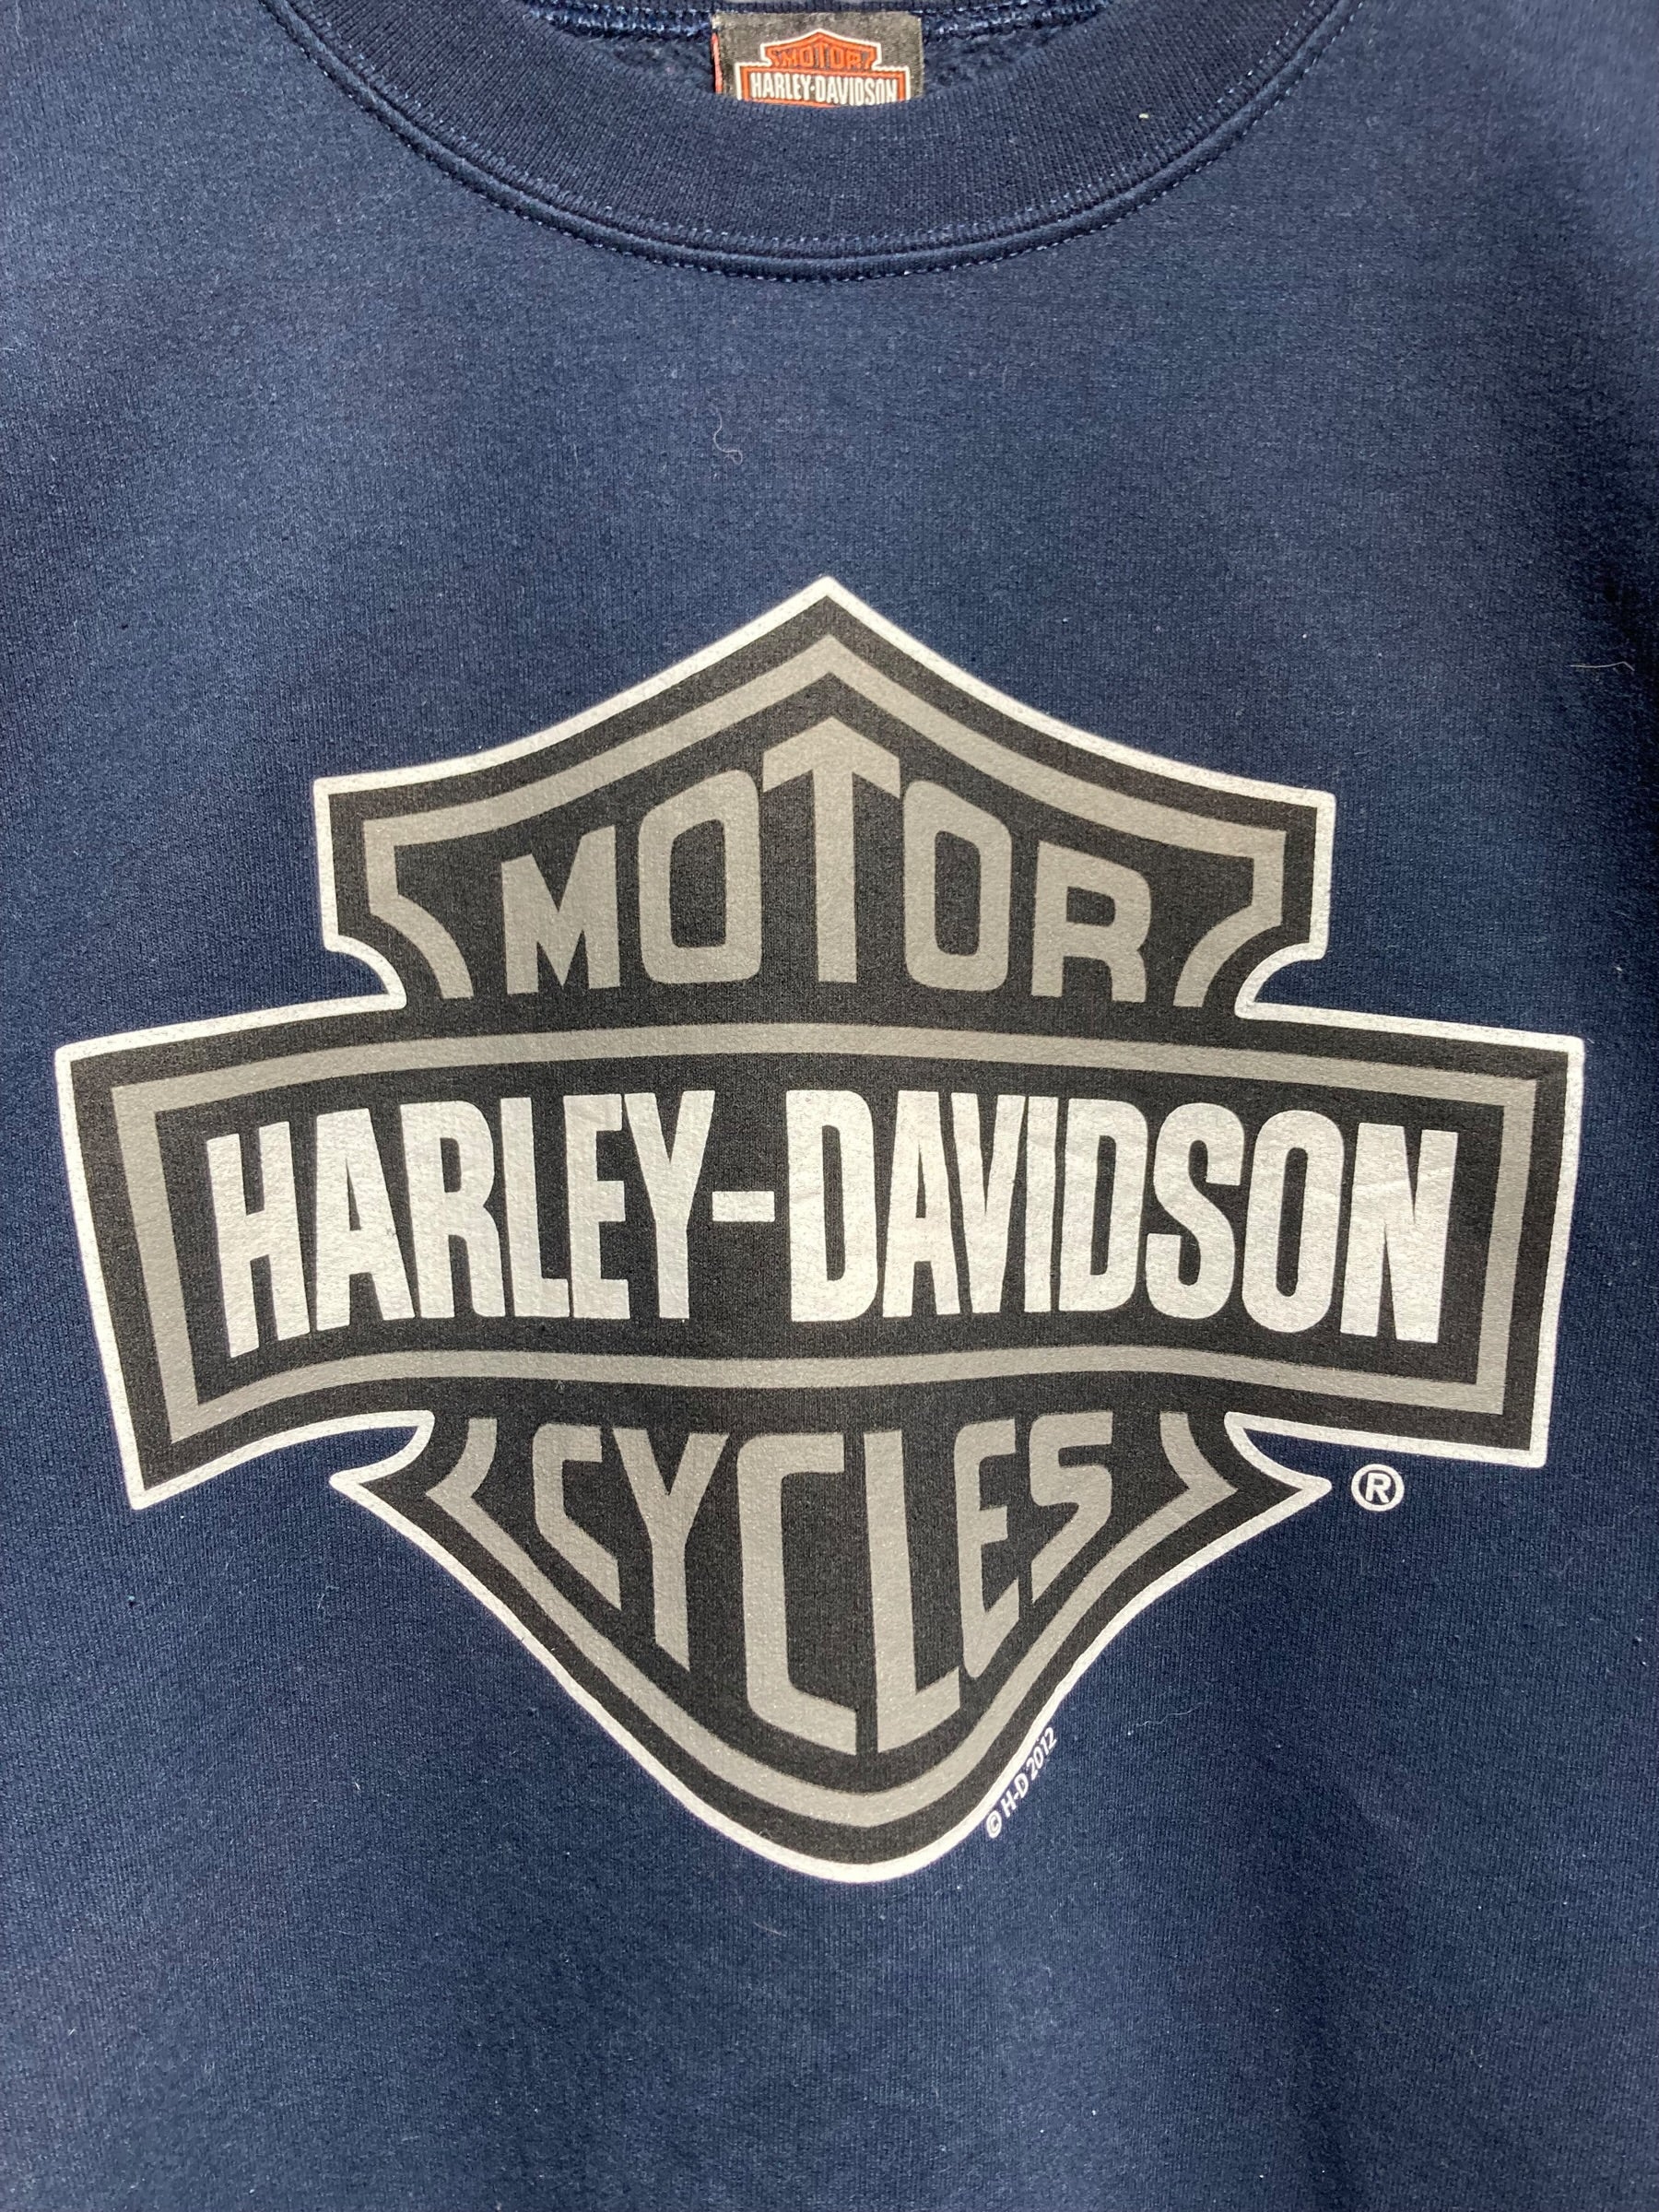 Harley Davidson ハーレーダビッドソン スウェット トレーナー